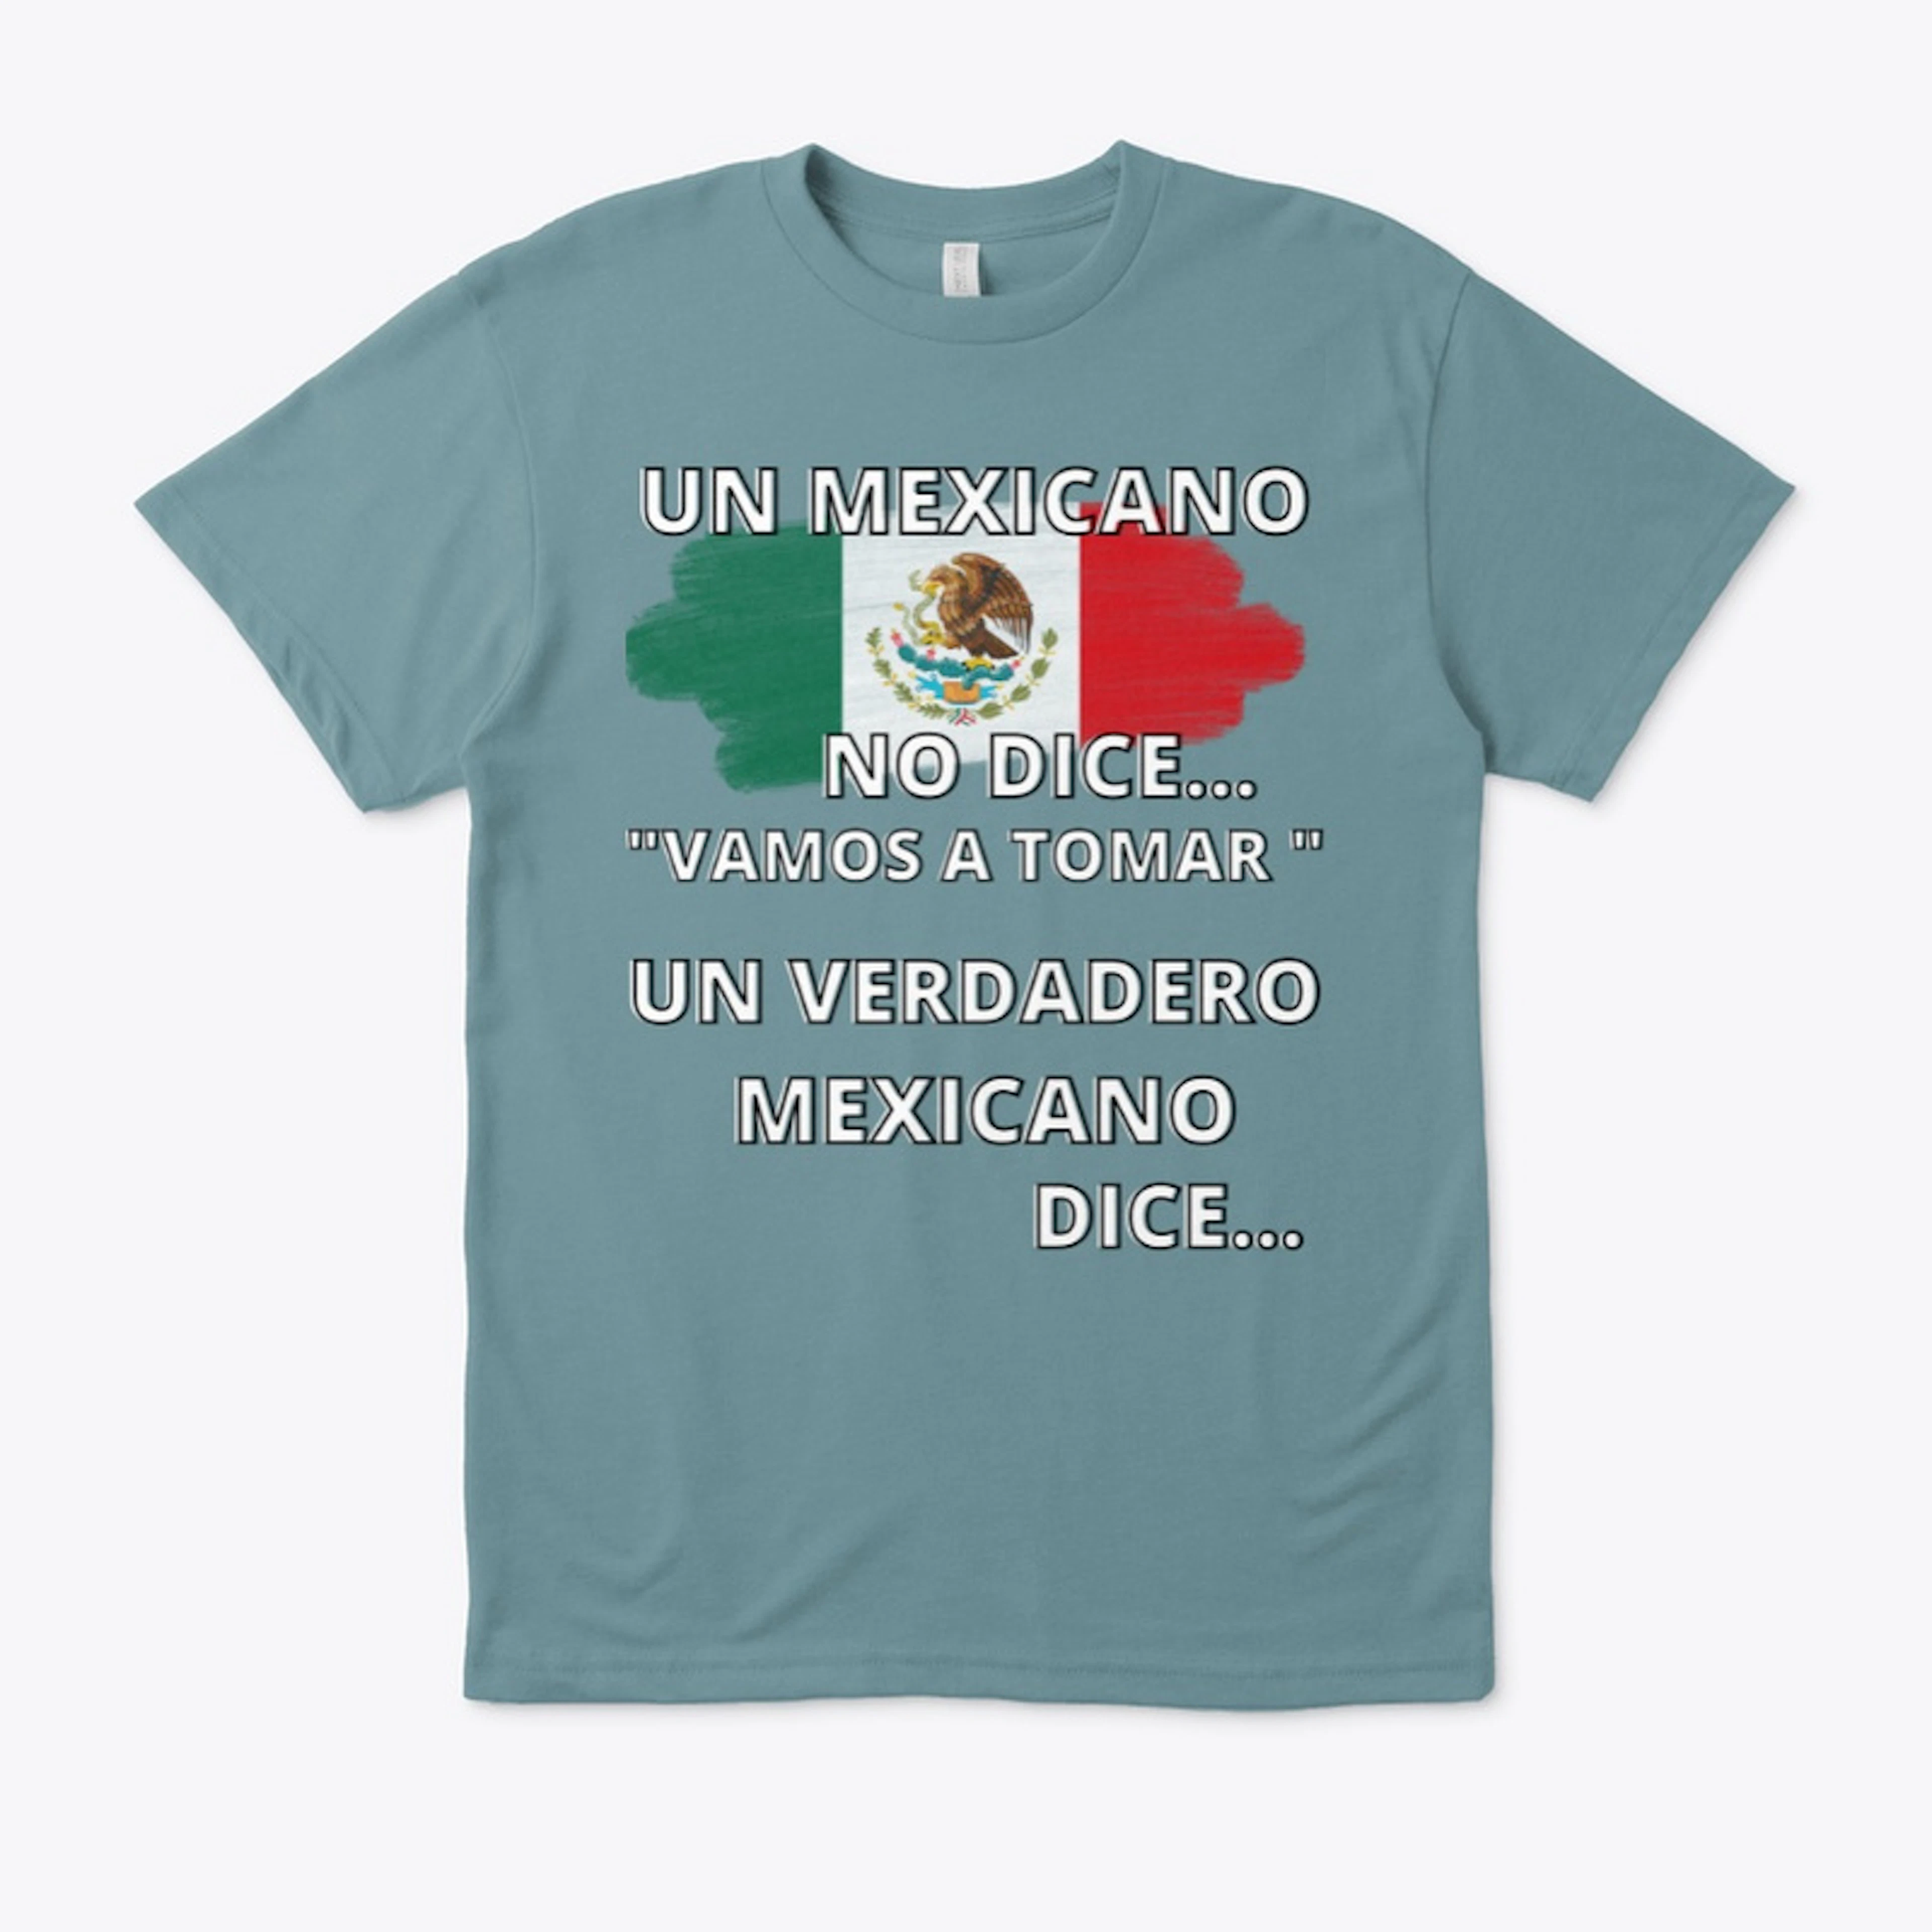 UN MEXICANO NO DICE...